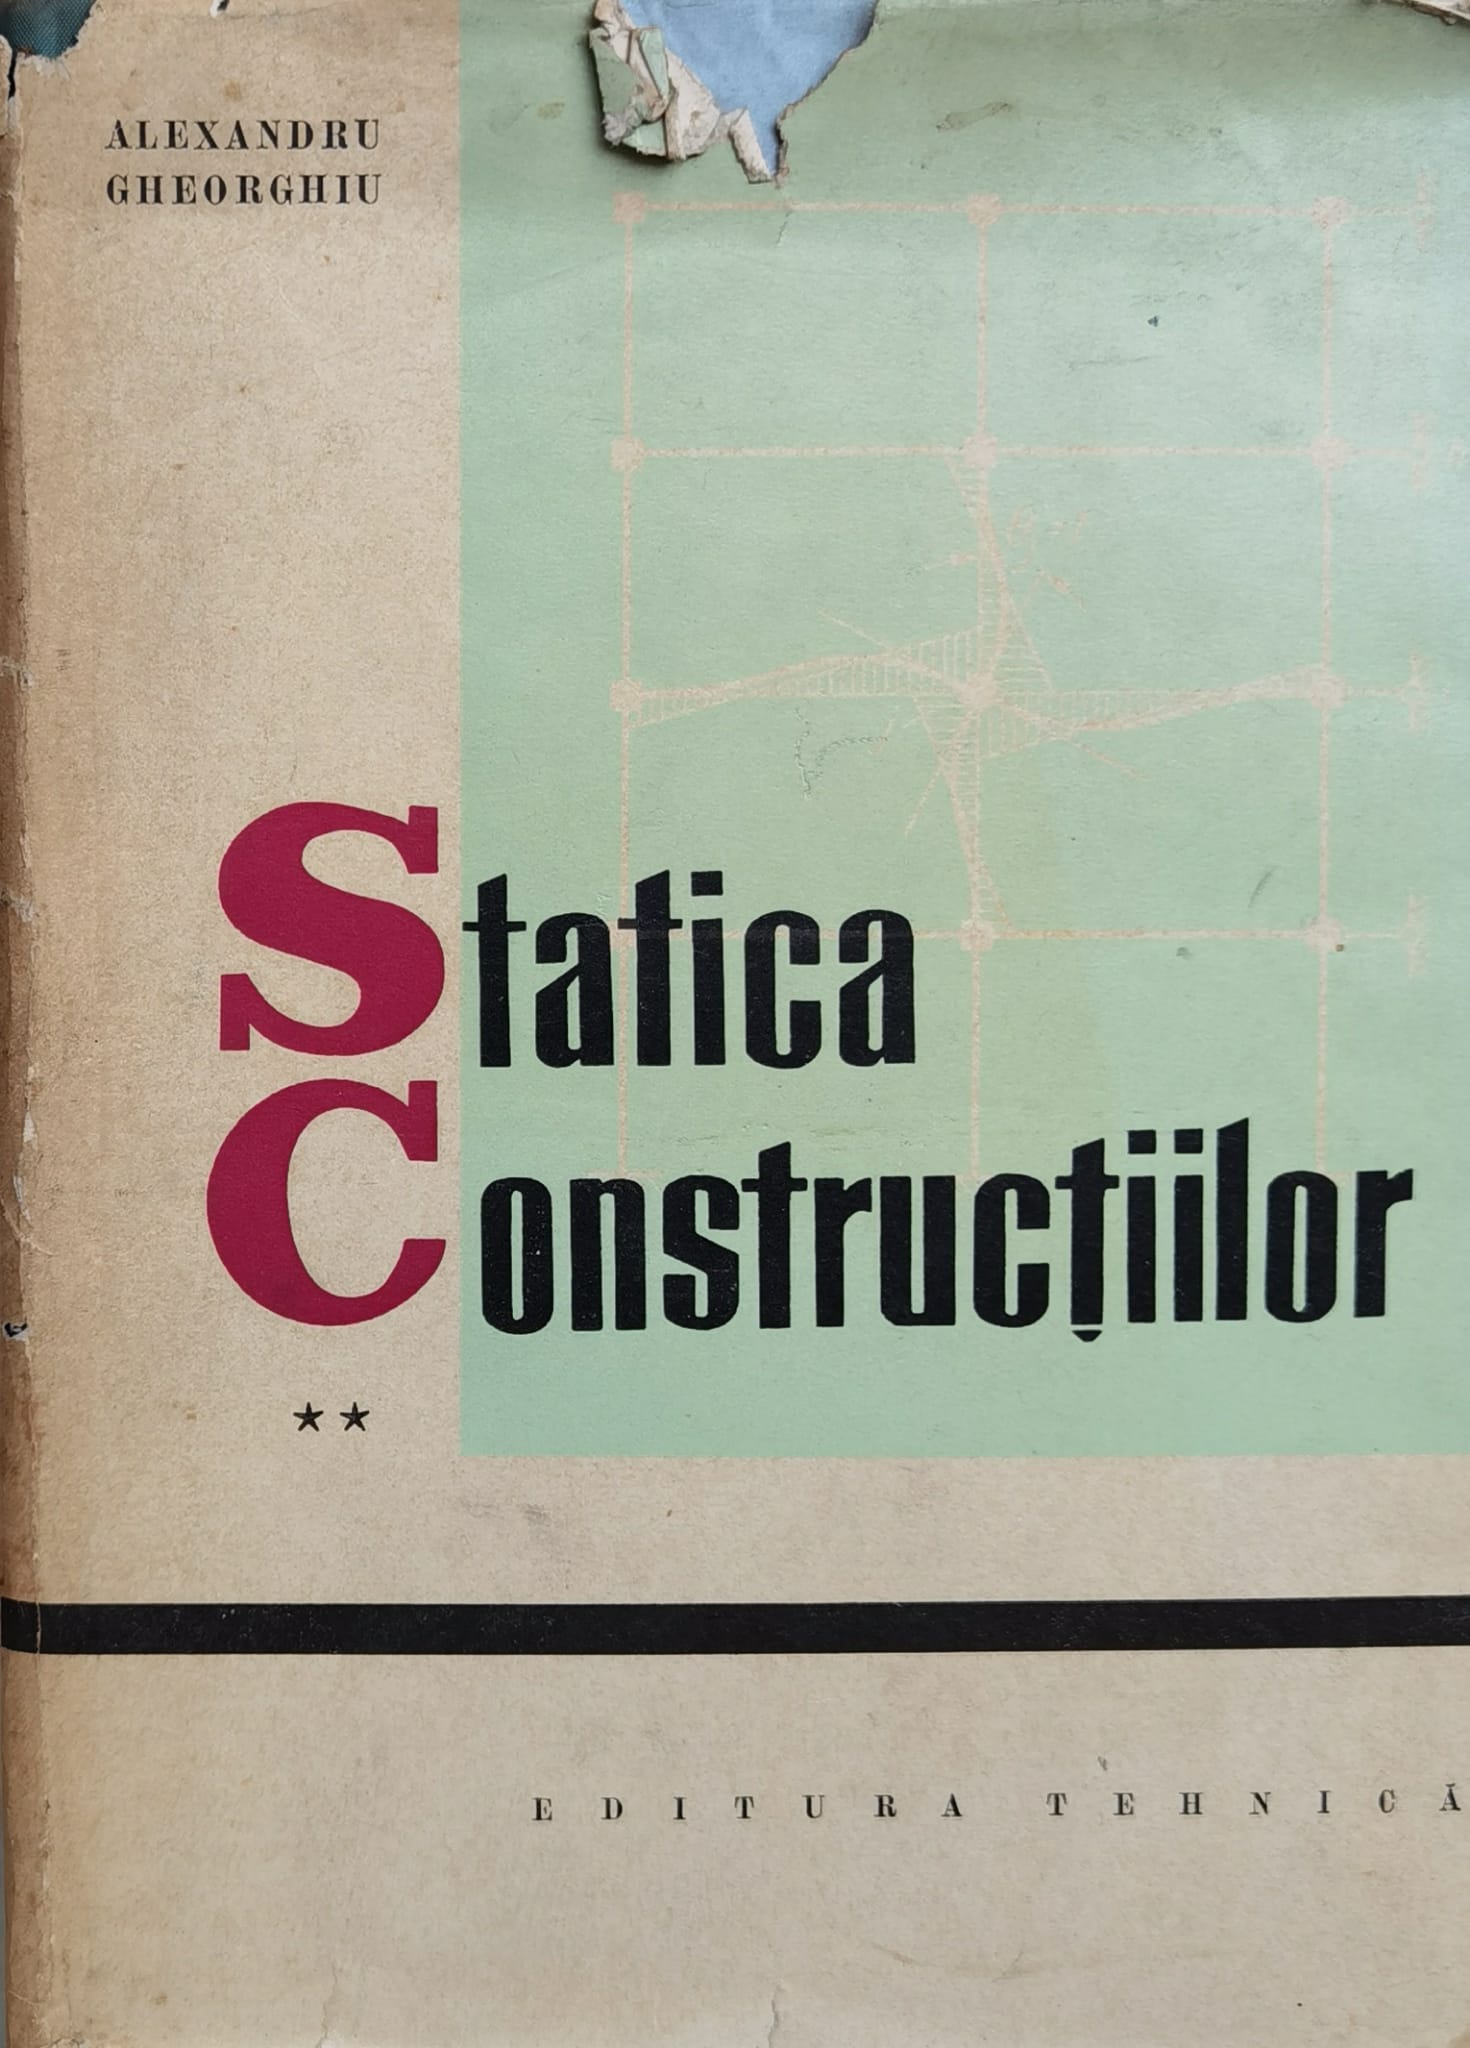 statica constructiilor vol.2                                                                         alexandru gheorghiu                                                                                 